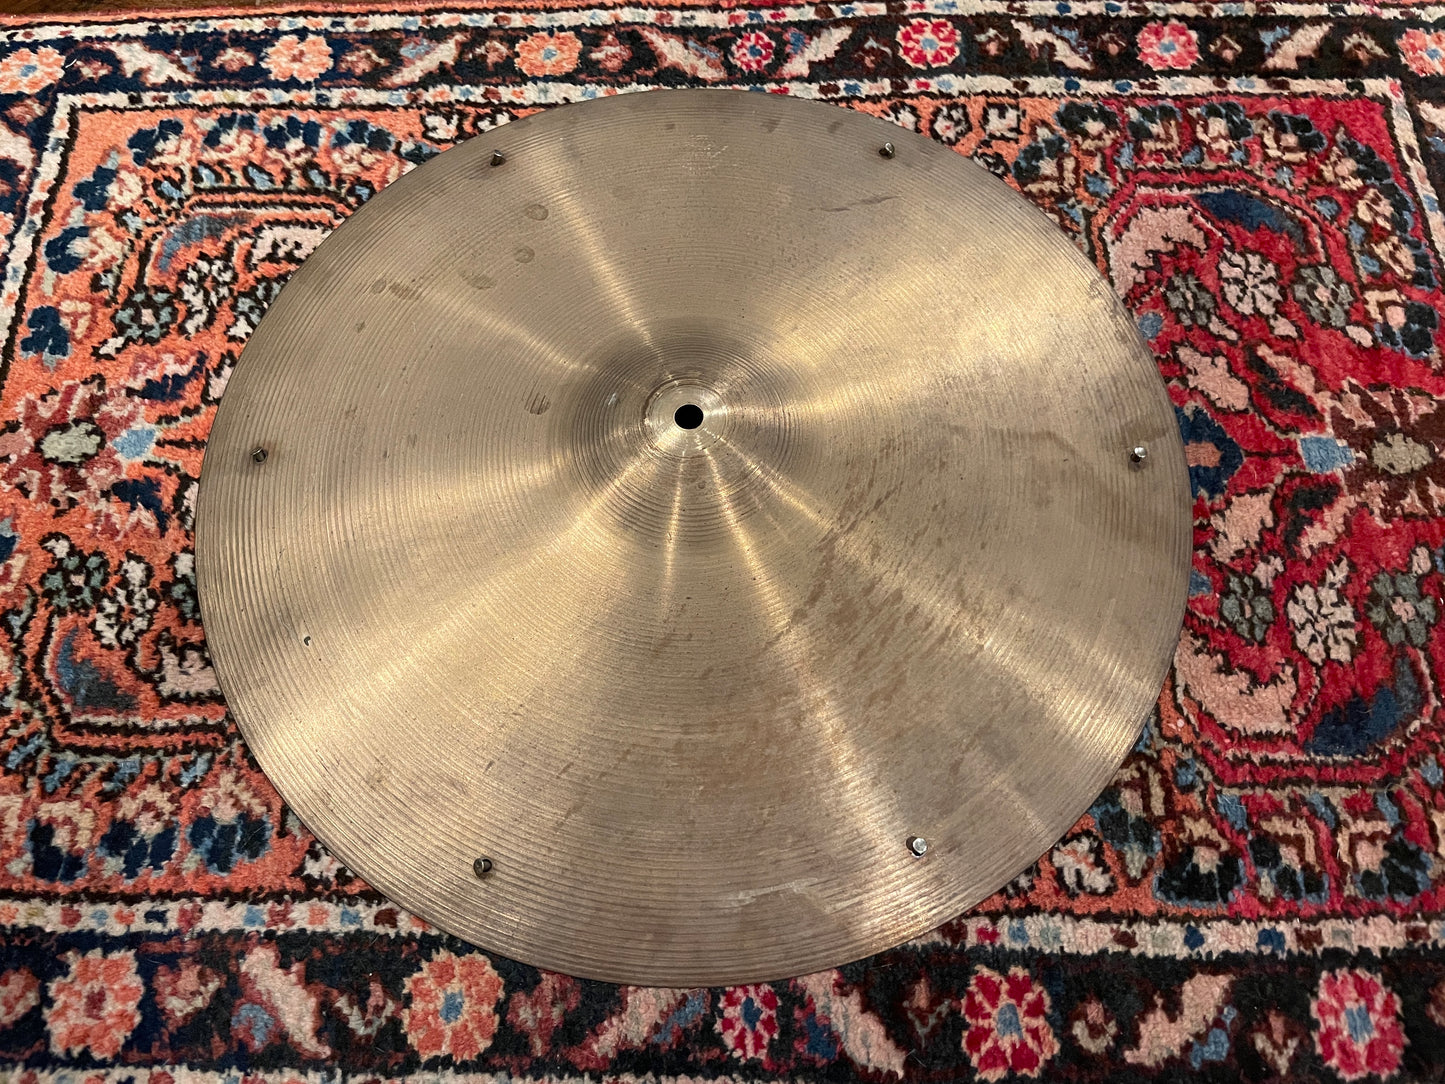 18" Zildjian A 1960s Crash Ride Cymbal w/ Factory Rivets 1680g #837